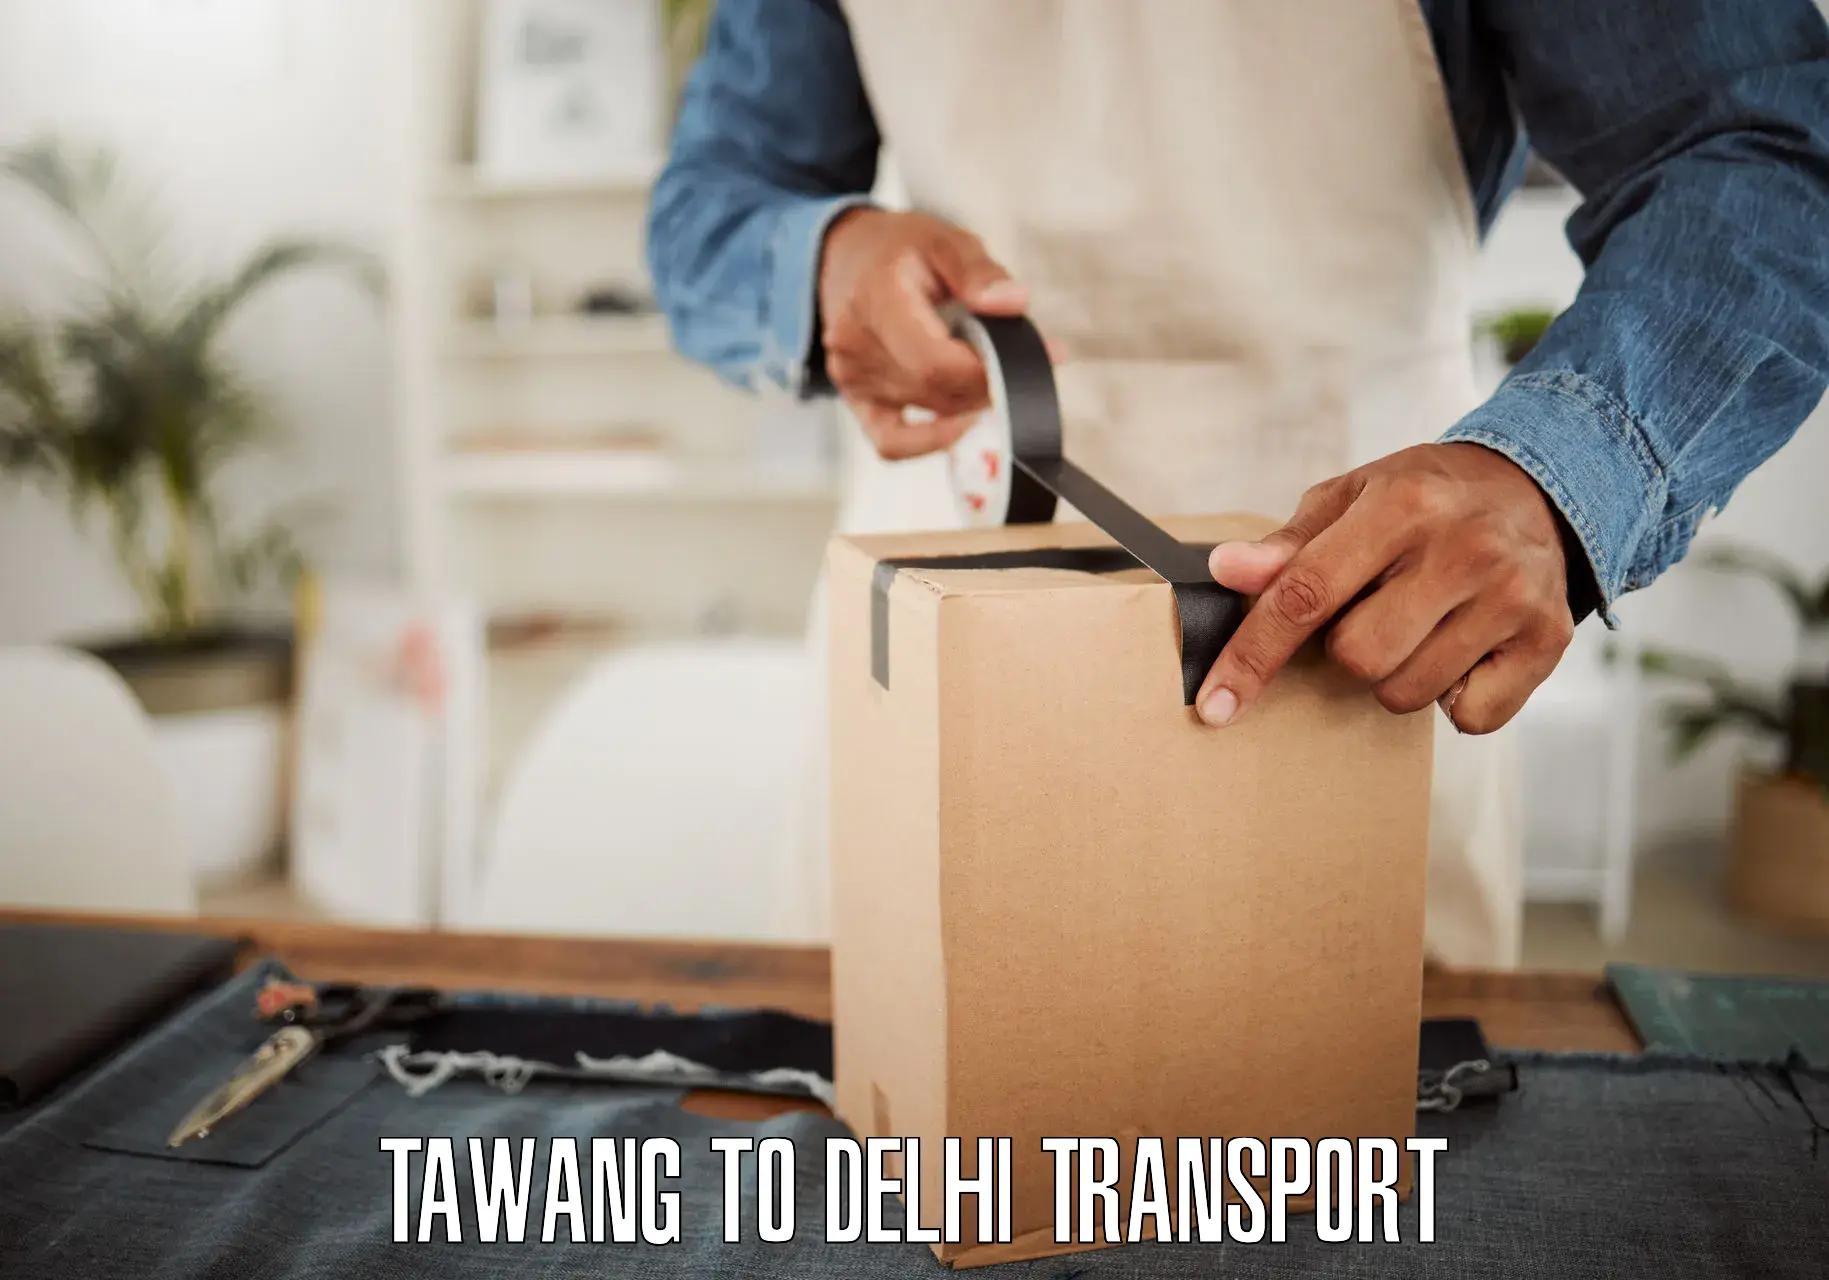 Daily transport service Tawang to NIT Delhi